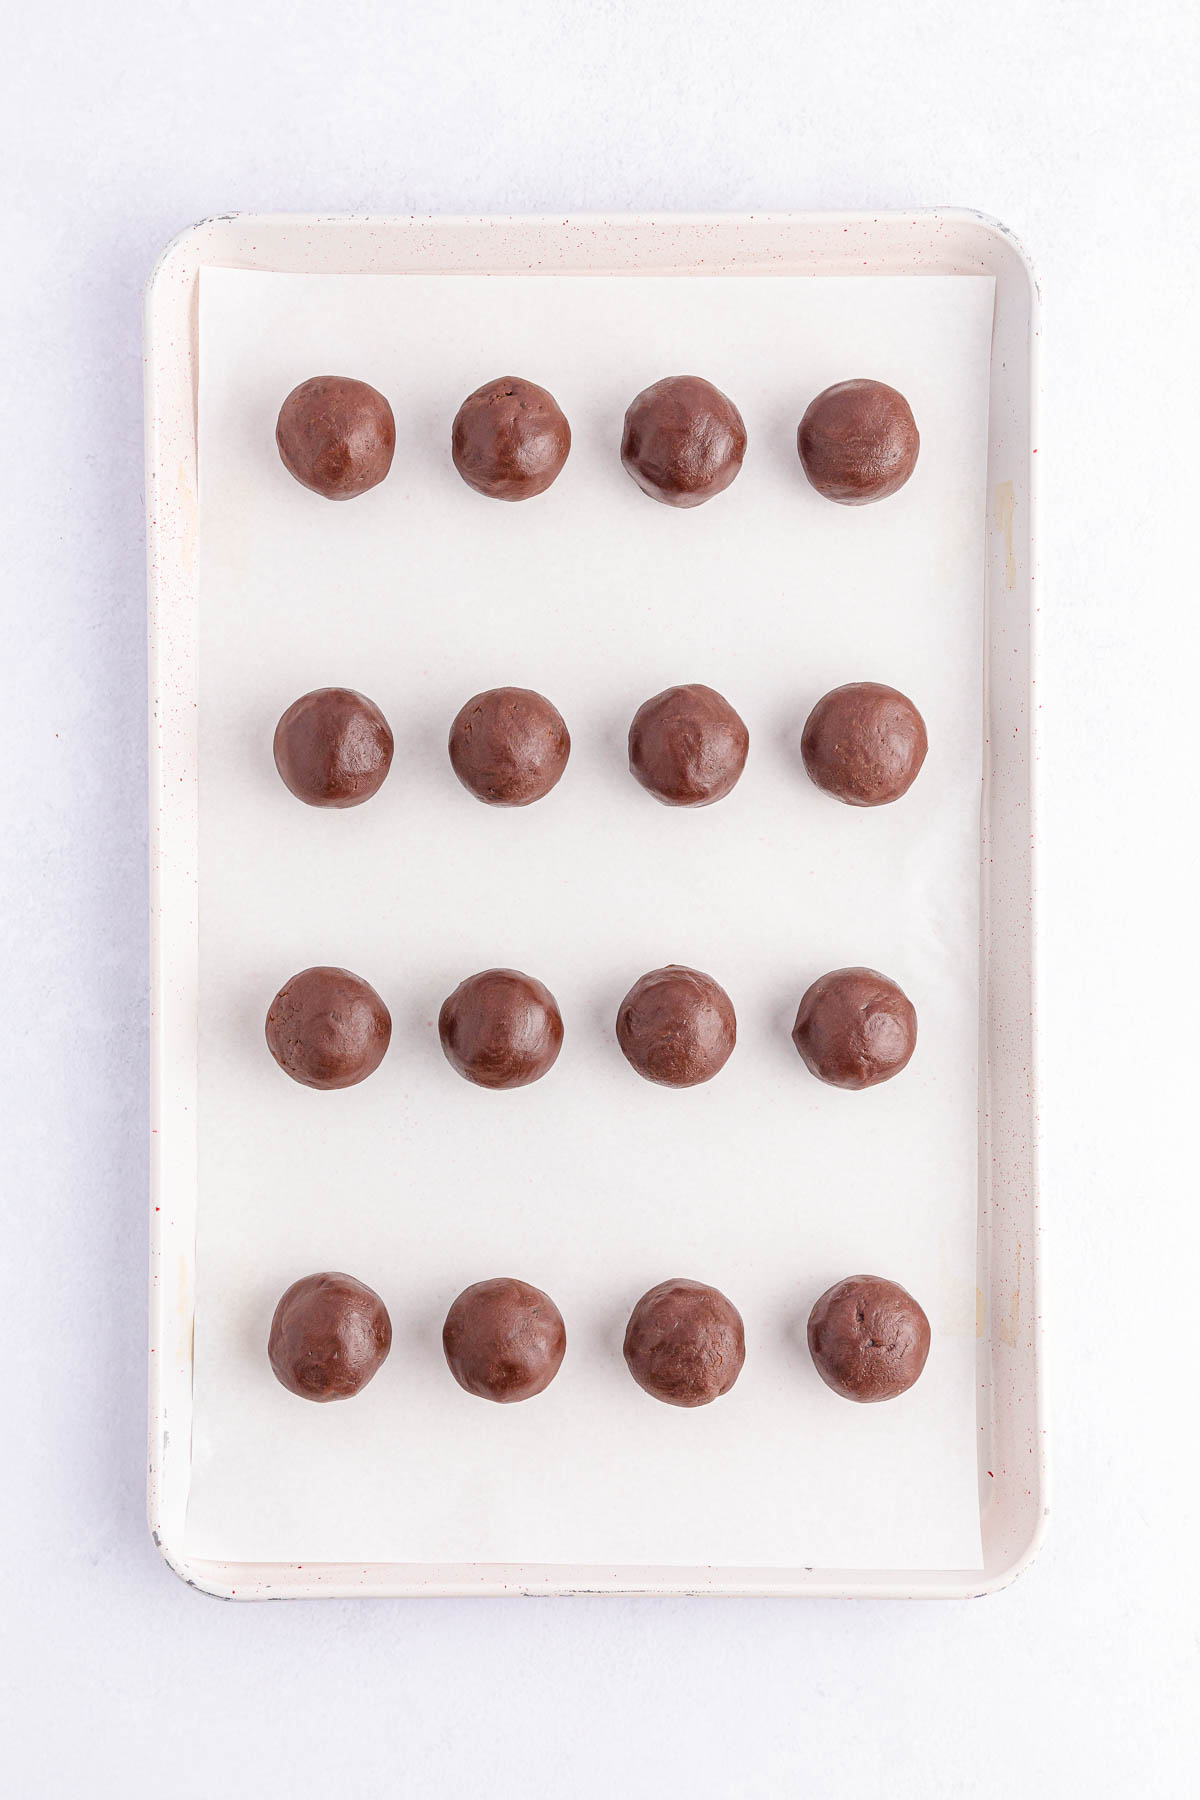 Brownie balls on baking sheet